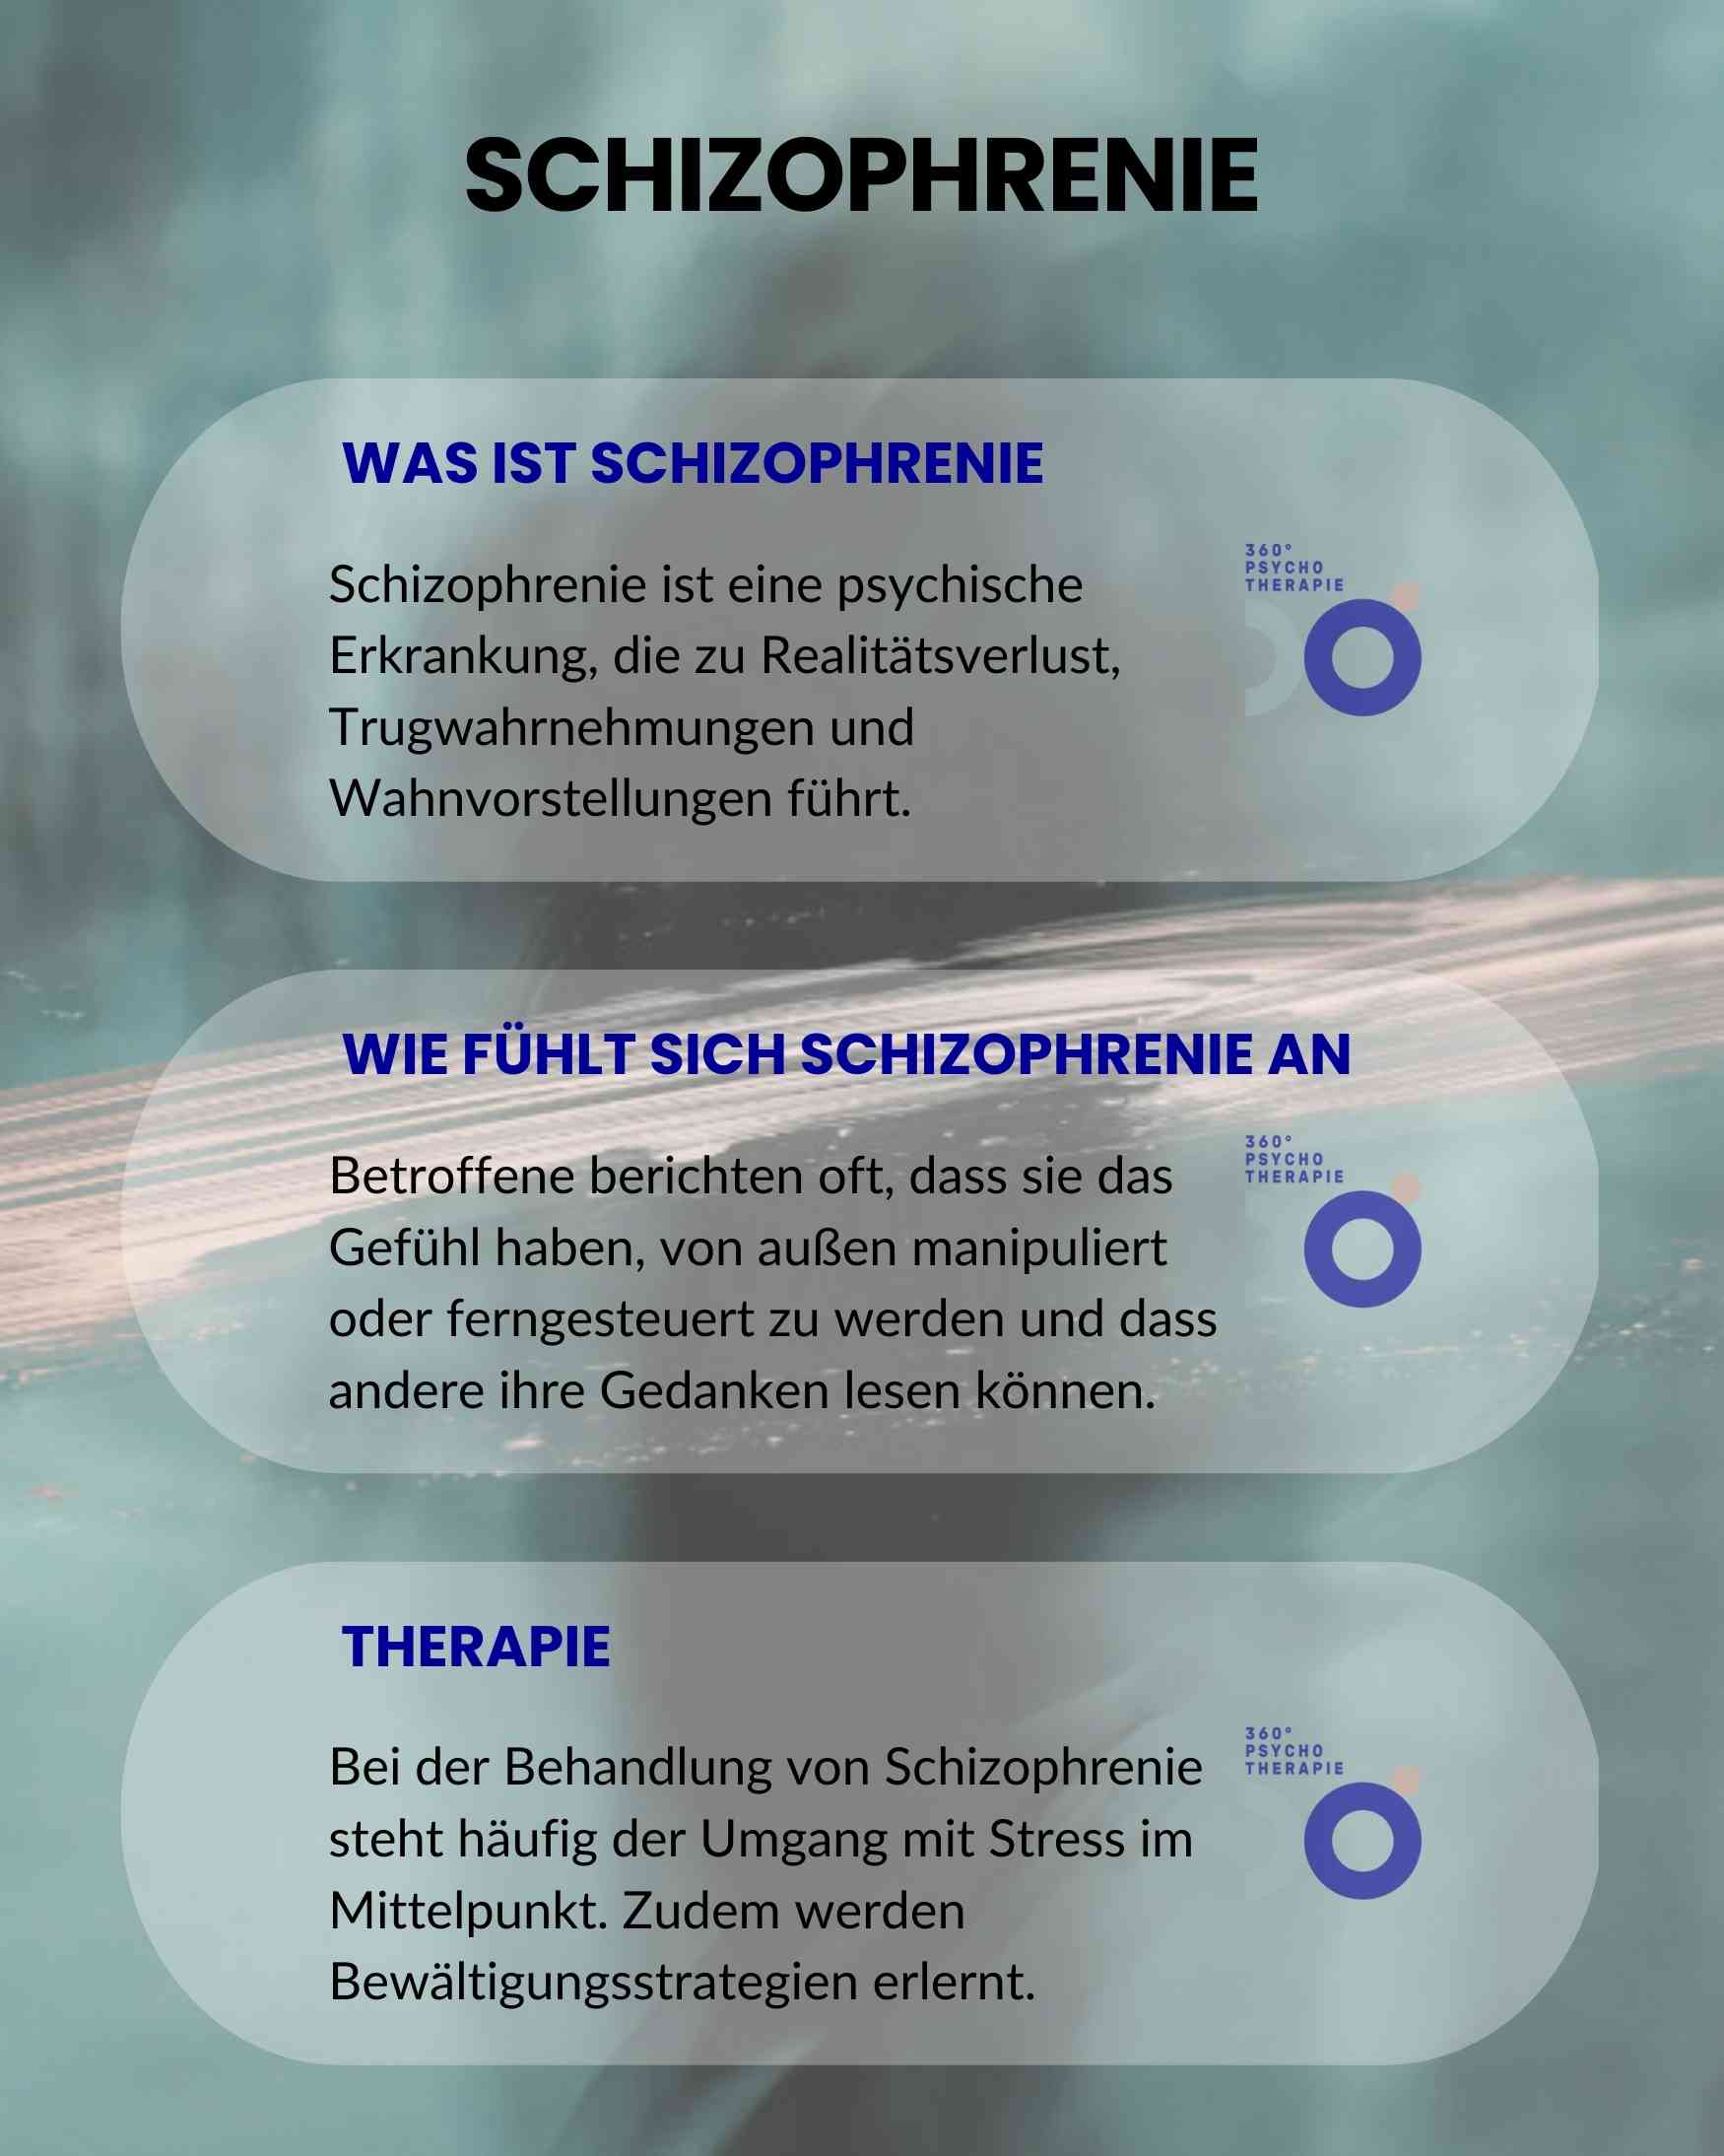 Infografik zum Thema Schizophrenie als Störungsbild und Therapieansätzen.